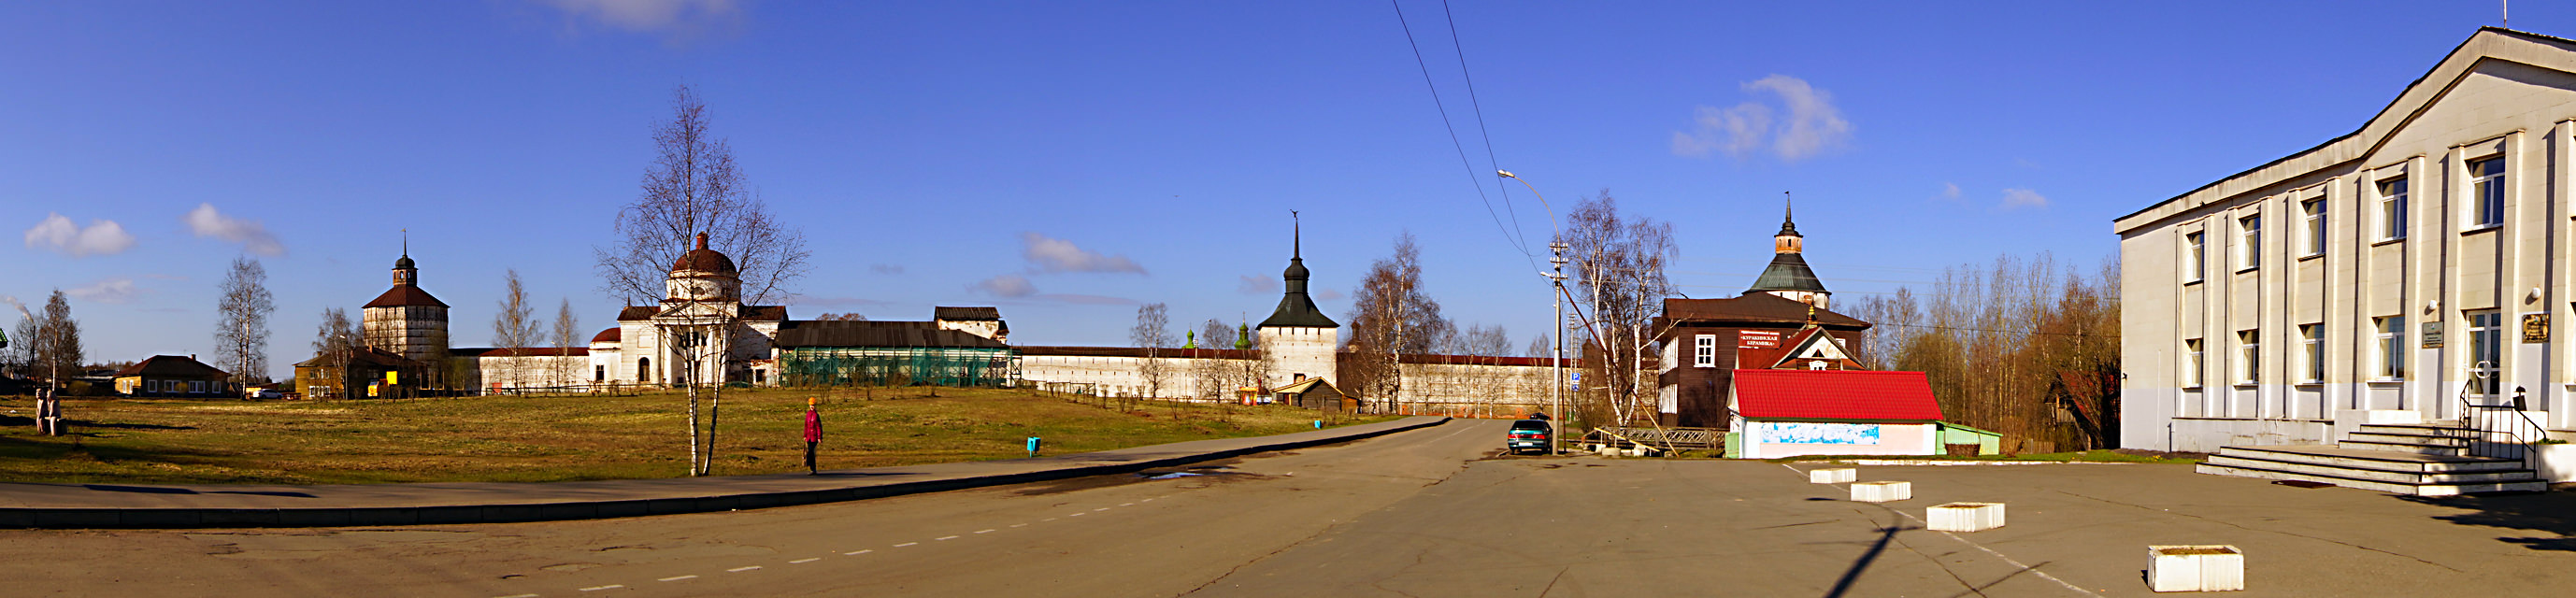 Кирилло-Белозёрский монастырь.02.05.2014.